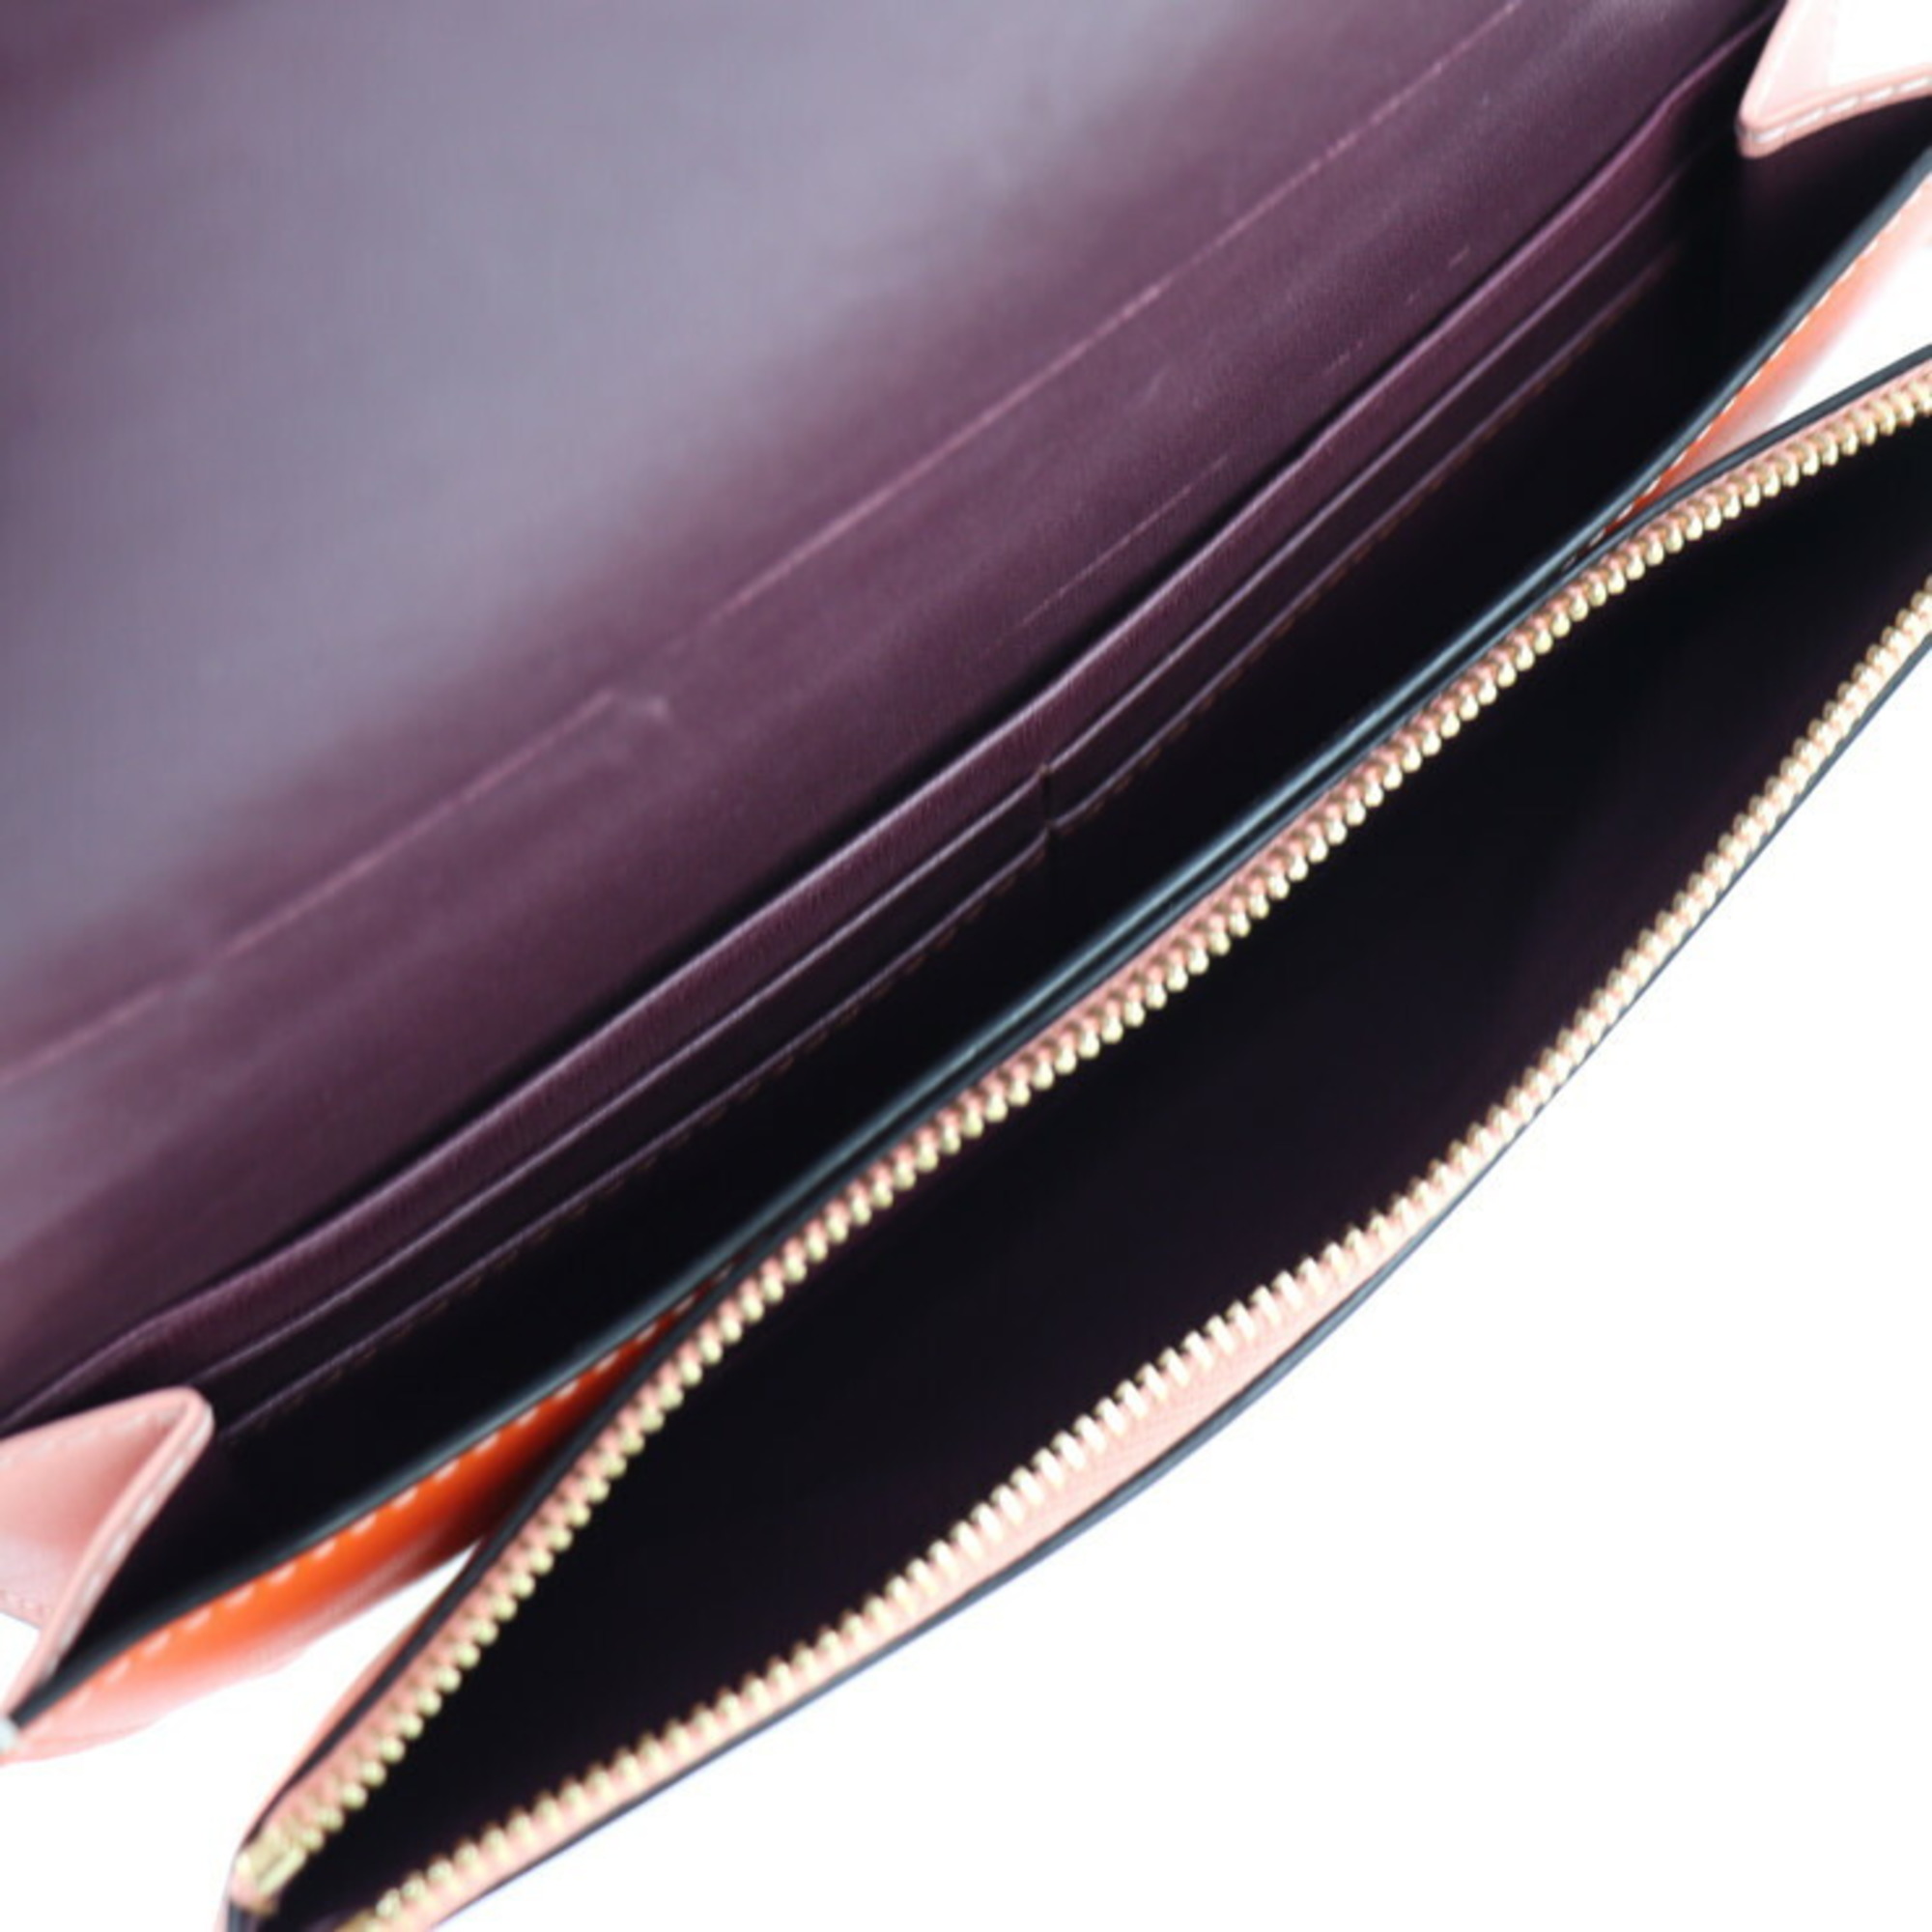 LOEWE GATE POCHETTE Gate pochette shoulder bag 11354BU52 leather orange pink gold hardware wallet long